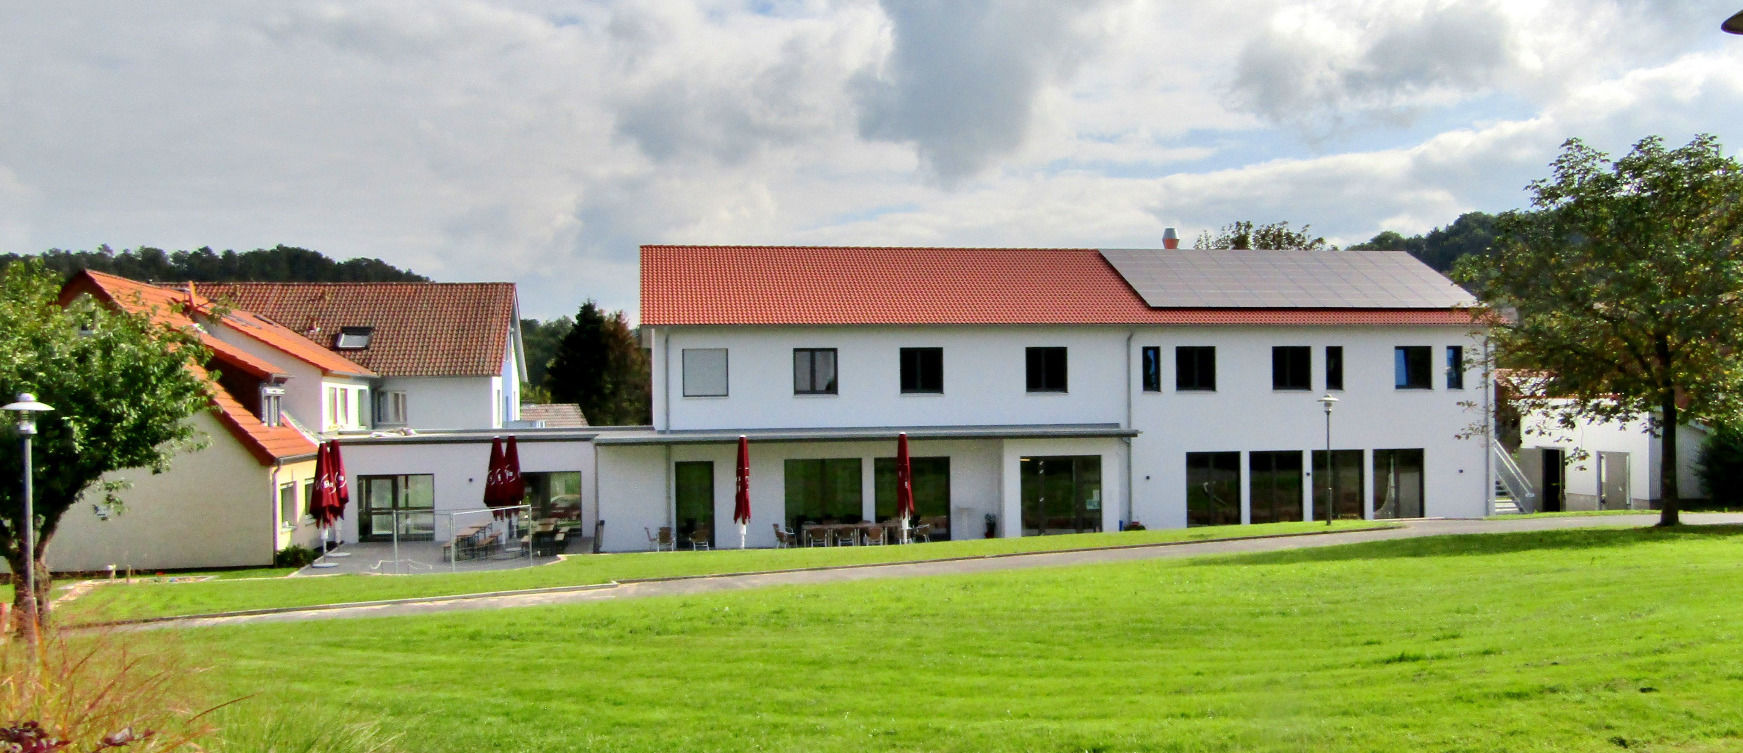 Josef Engling Haus